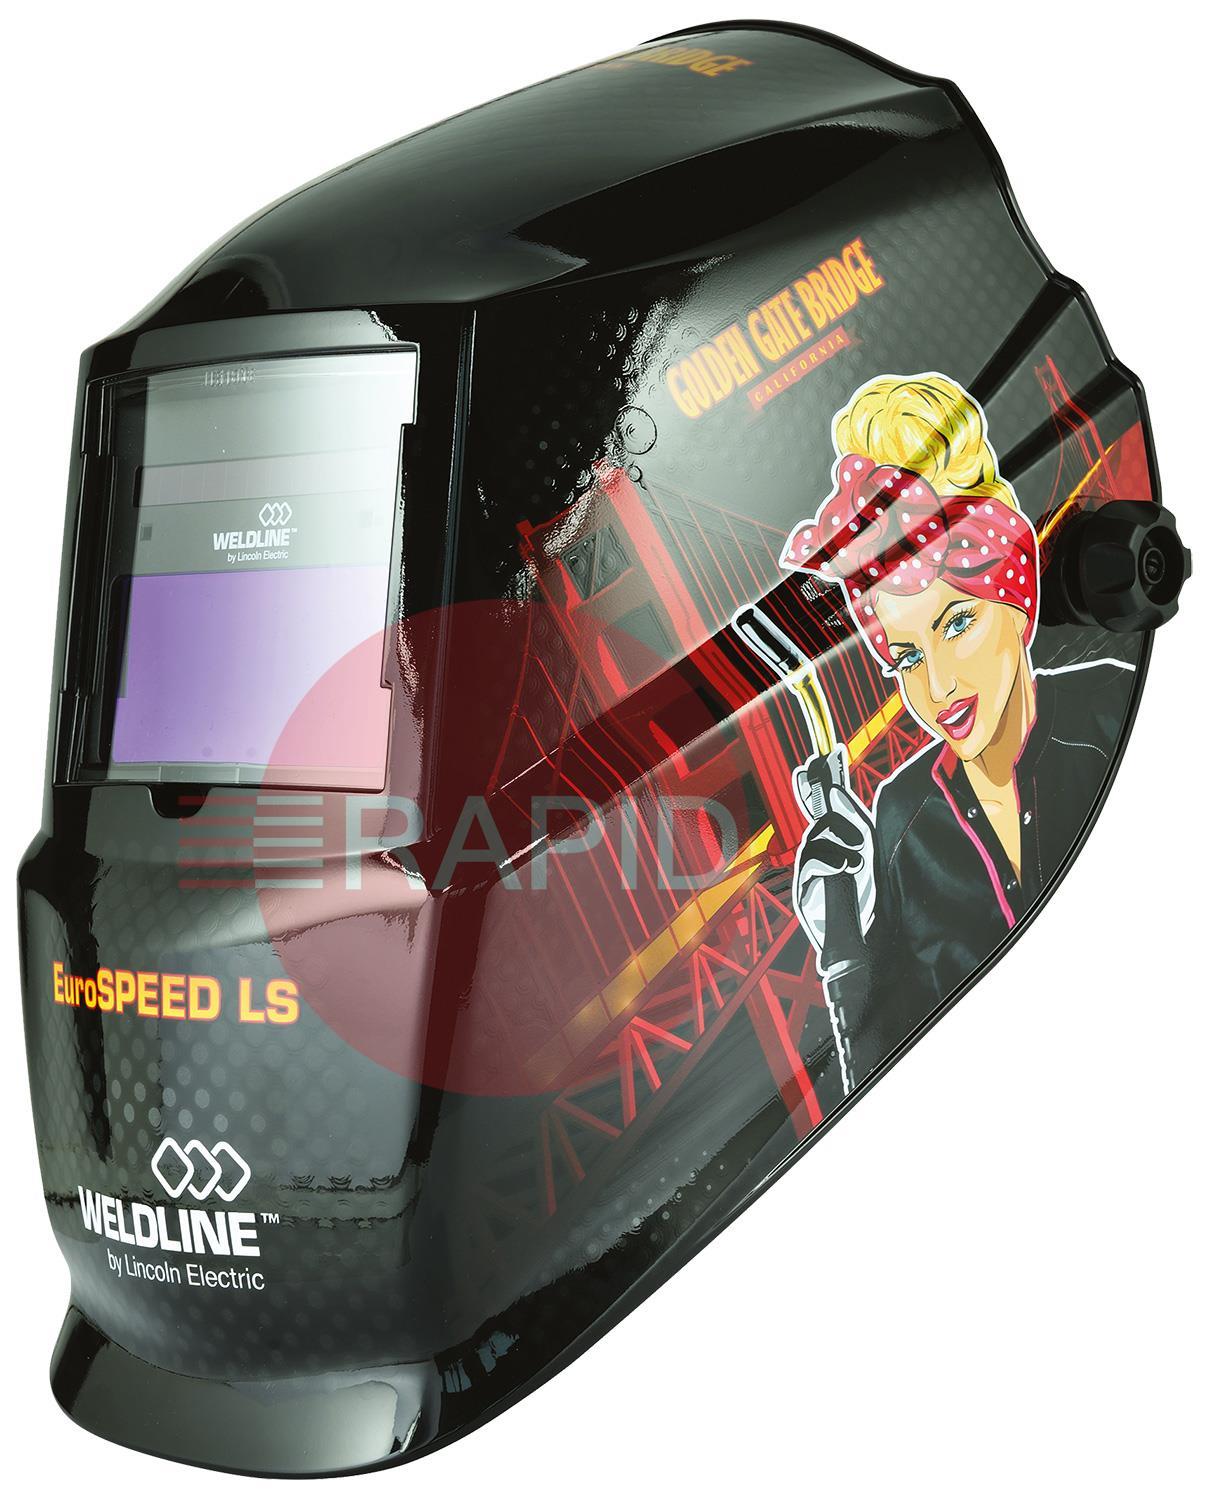 W000403824-2  Weldline EuroSPEED LS Edition Auto-Darkening Welding Helmet, Shades 3.5/9-13